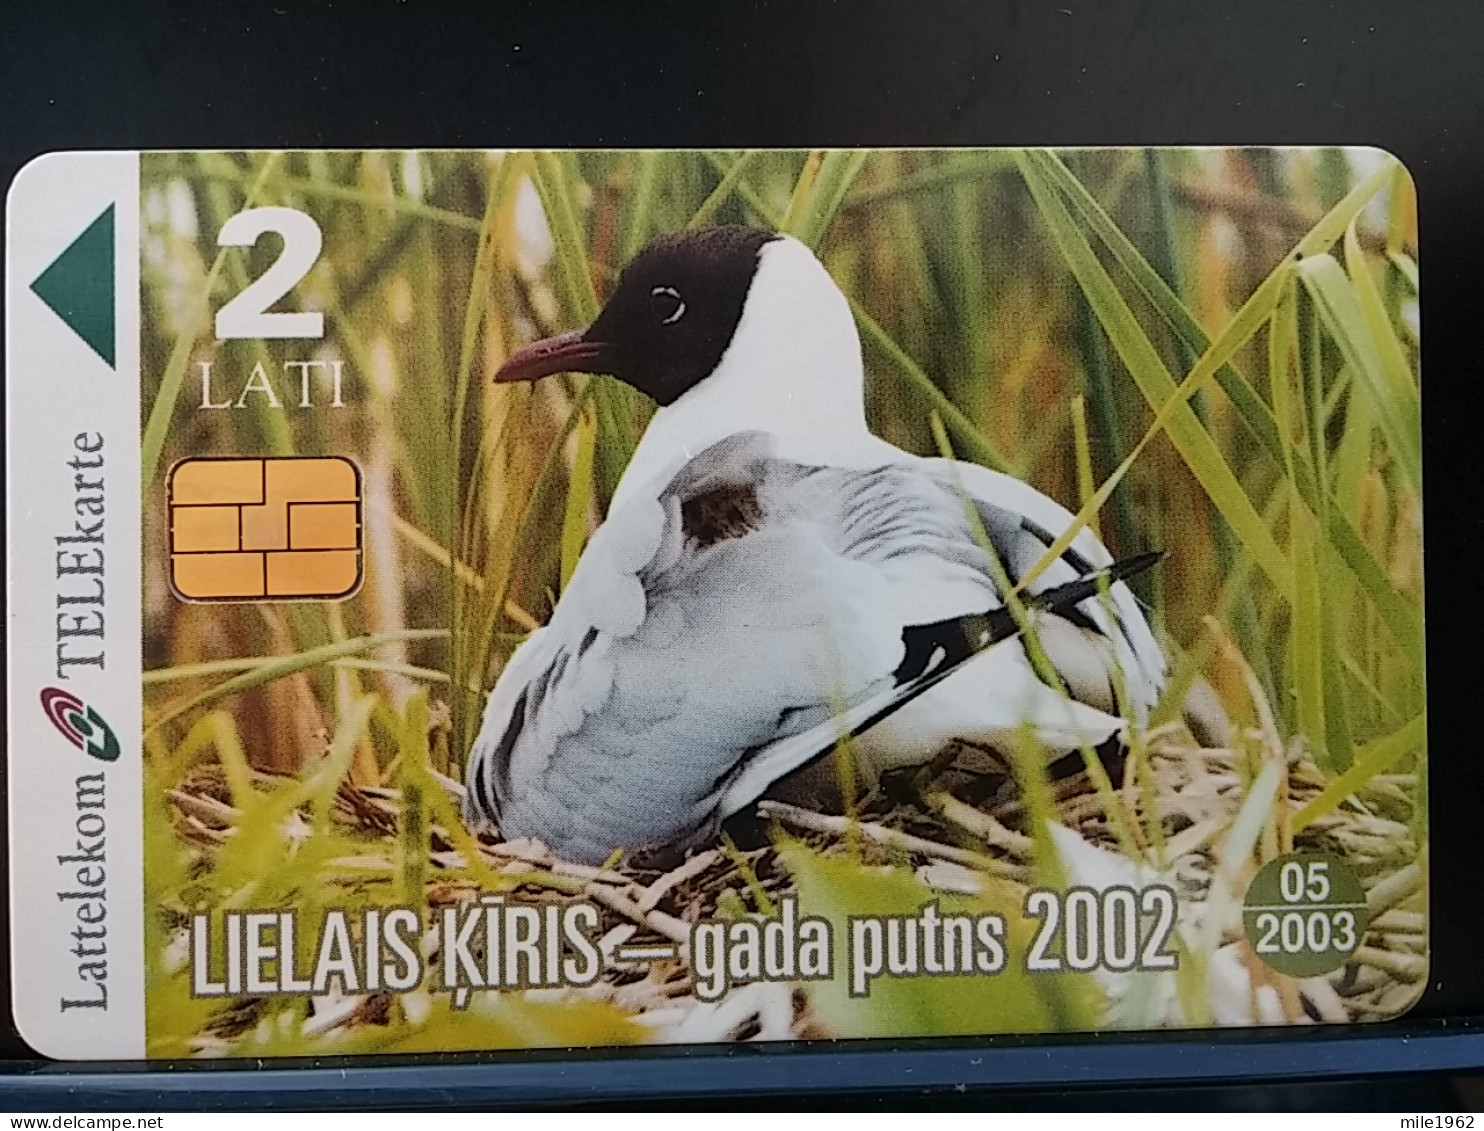 T-312 - LATVIA TELECARD, PHONECARD, ANIMAL, BIRD, OISEAU - Letland